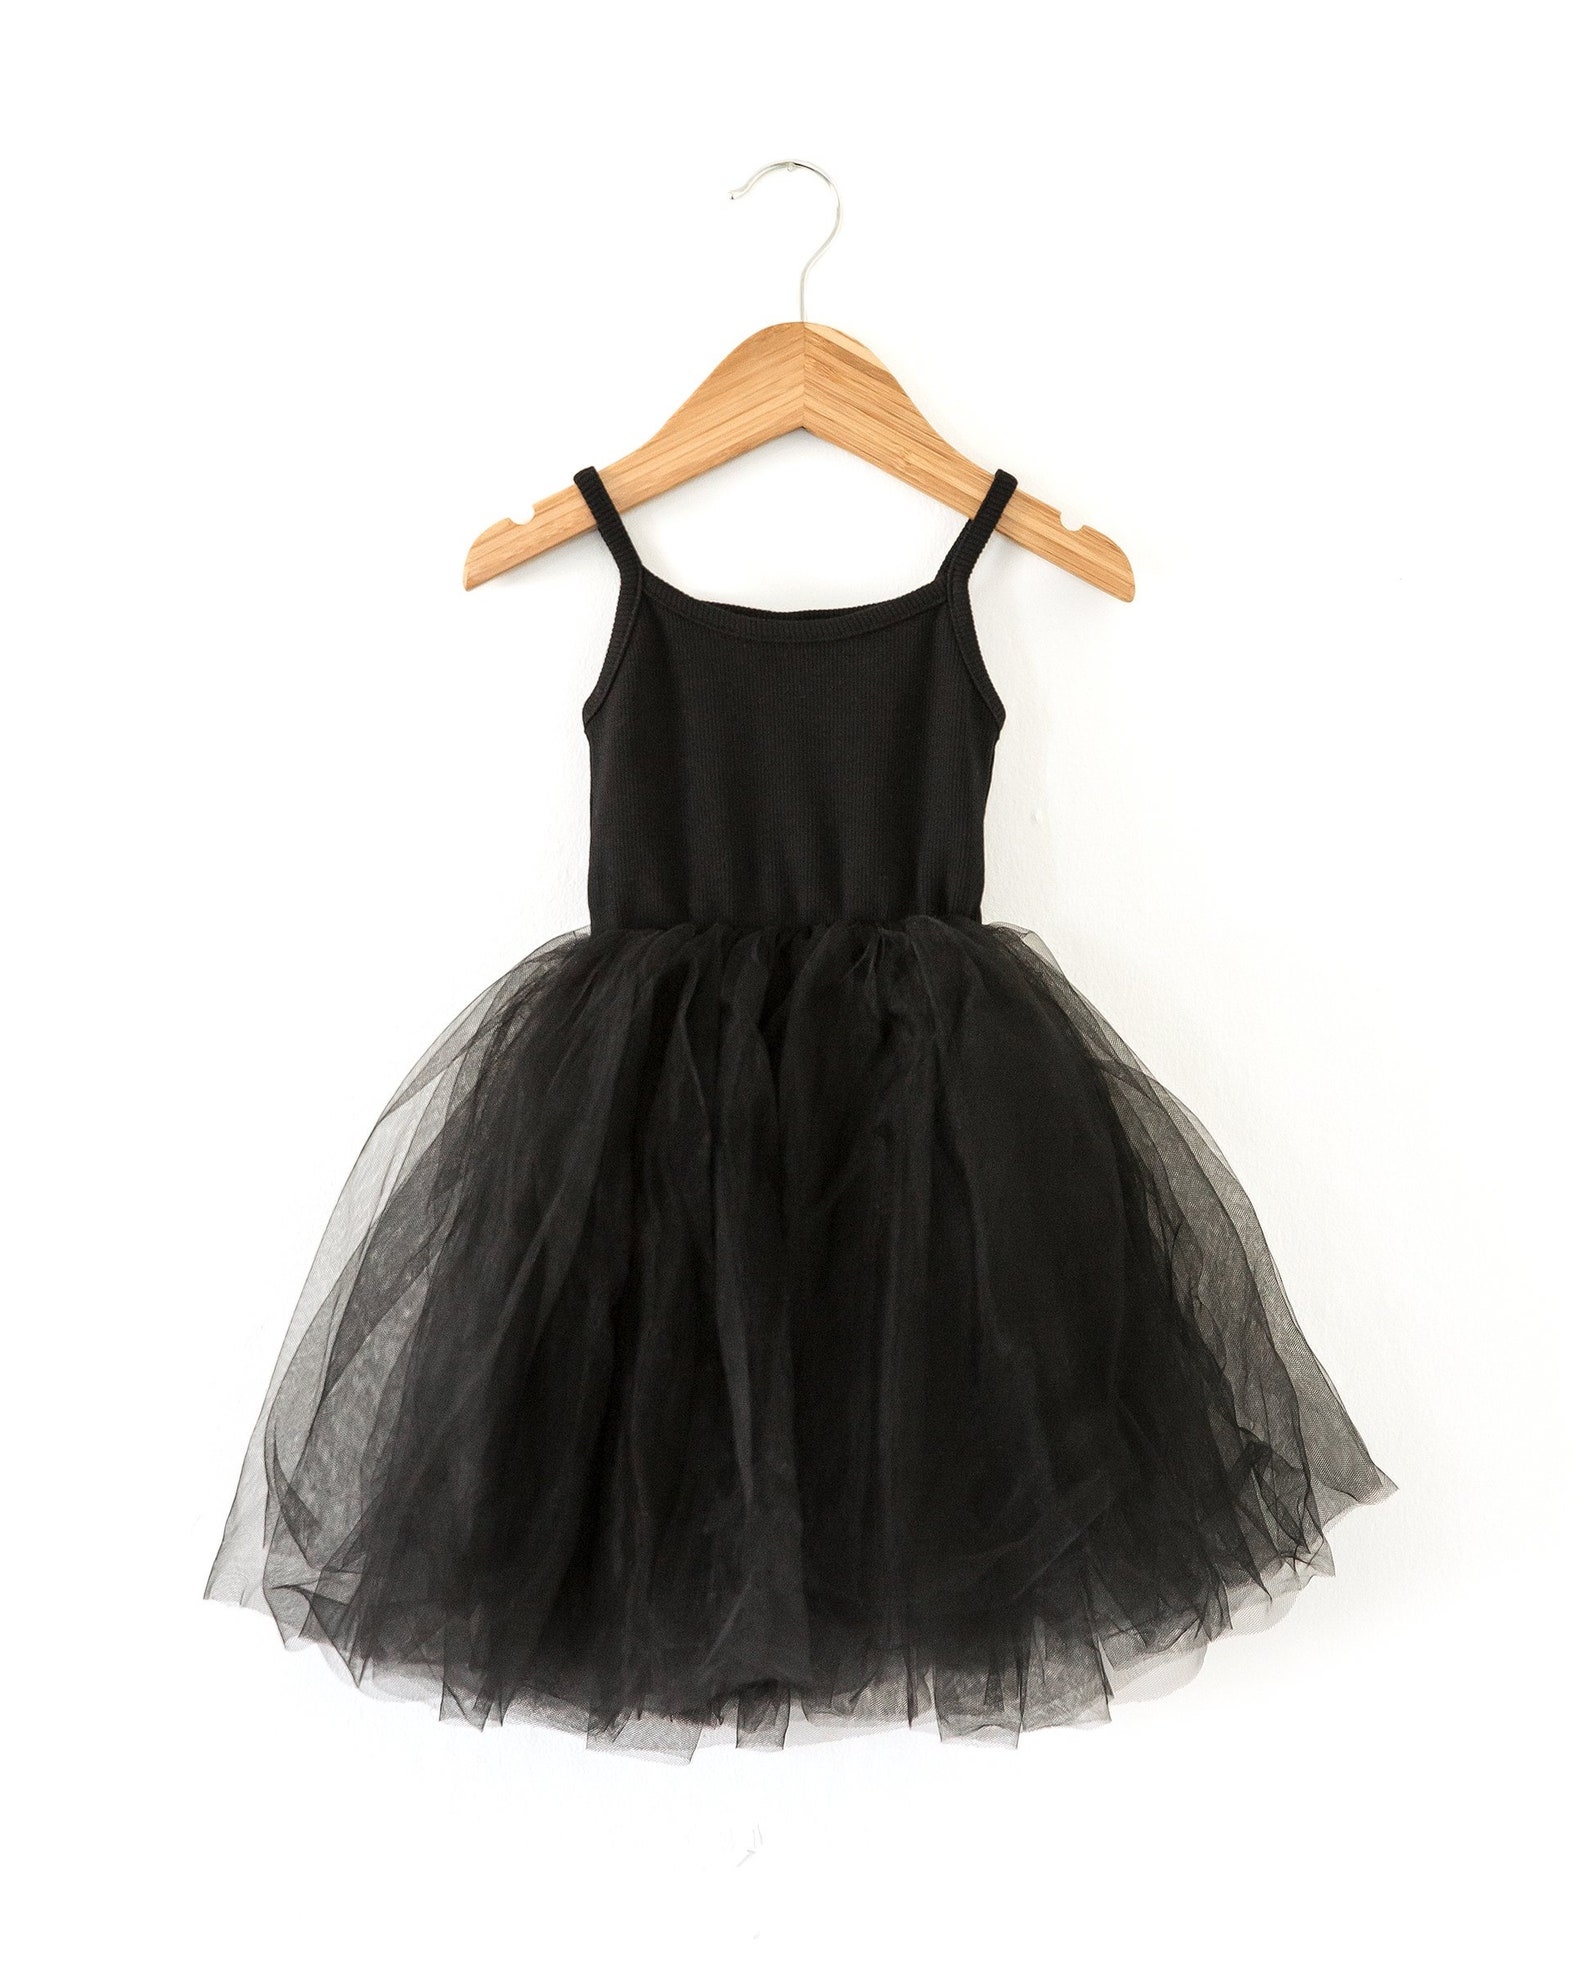 Little Girl Ballerina Dress in Black Baby Girl Dress Little - Etsy